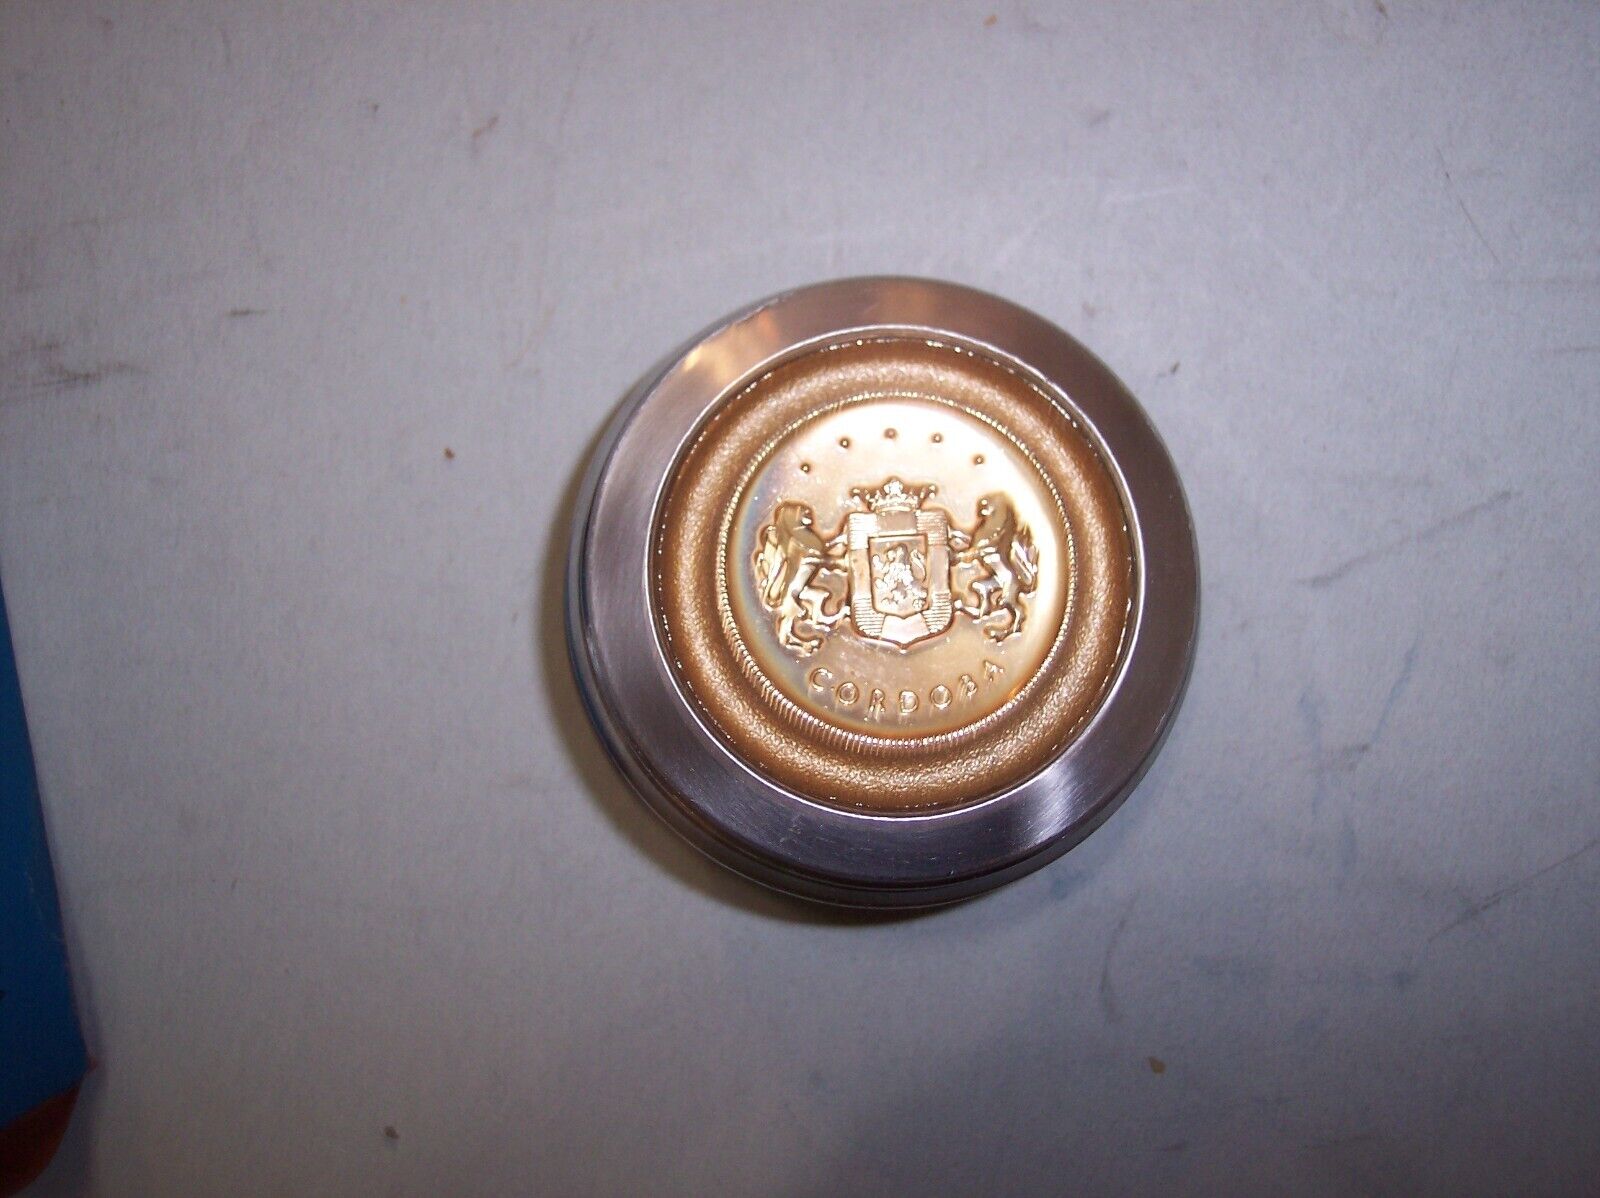 NOS MOPAR Chrysler Trunk Lock Cover Medallion Medal 4054006 Cordoba